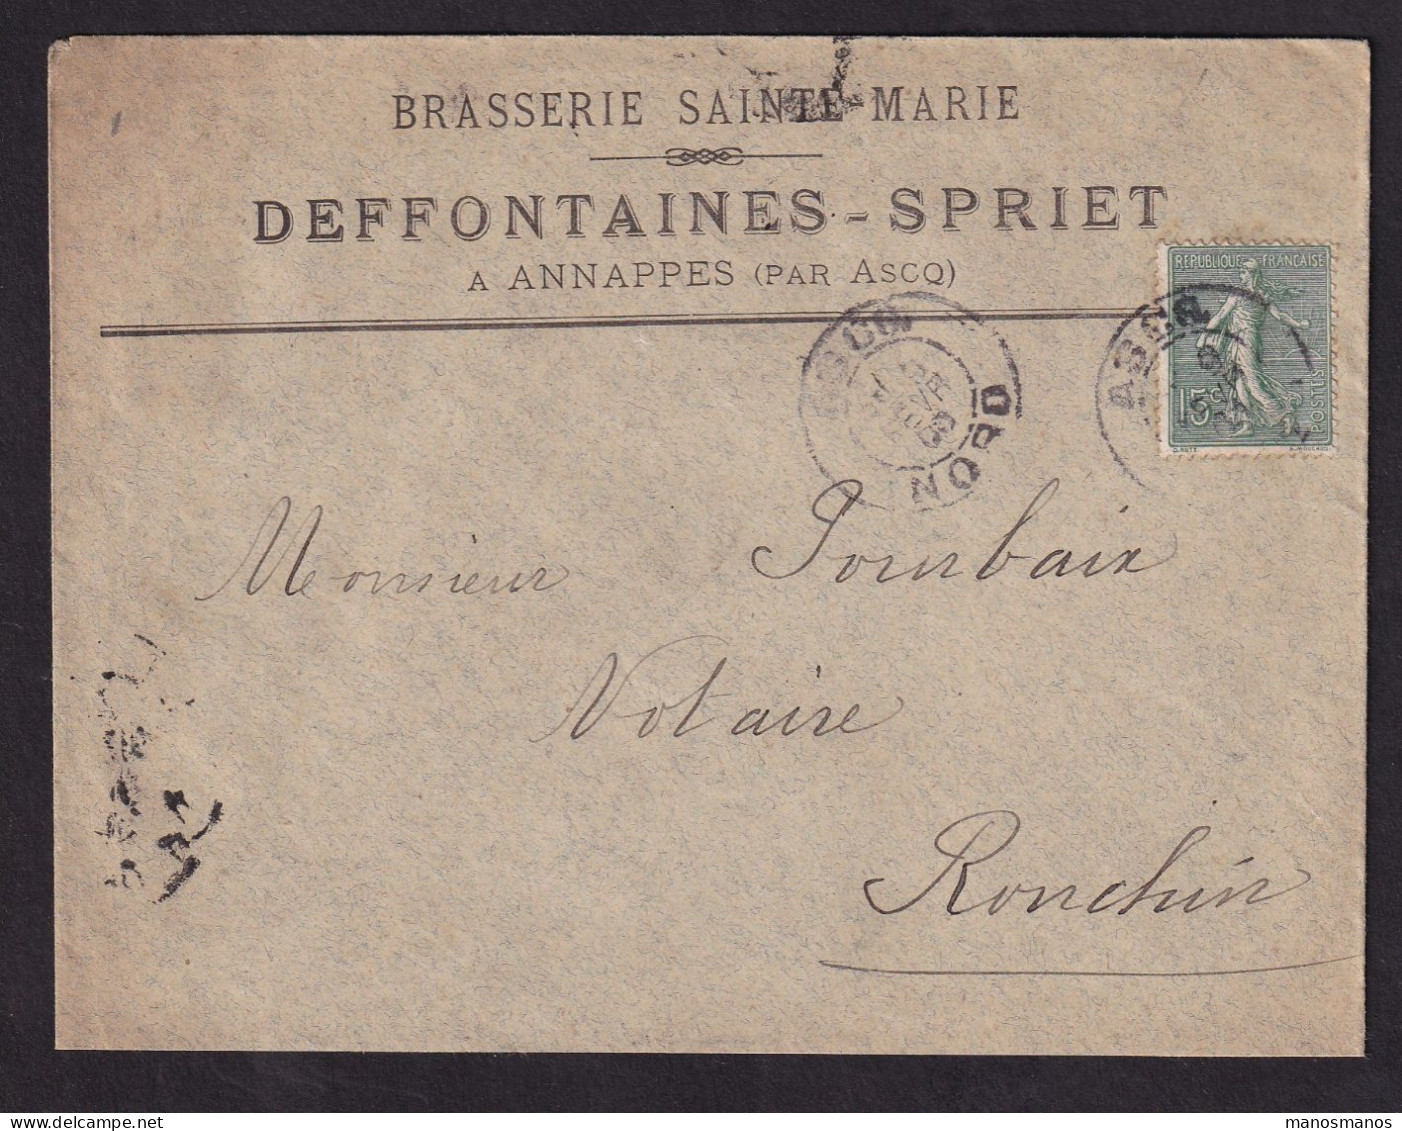 DDDD 928 -- BRASSERIES FRANCE - Enveloppe TP Semeuse ANNAPPES Par ASCQ (Nord) 1908 - Brasserie Sainte-Marie DEFFONTAINES - Bier